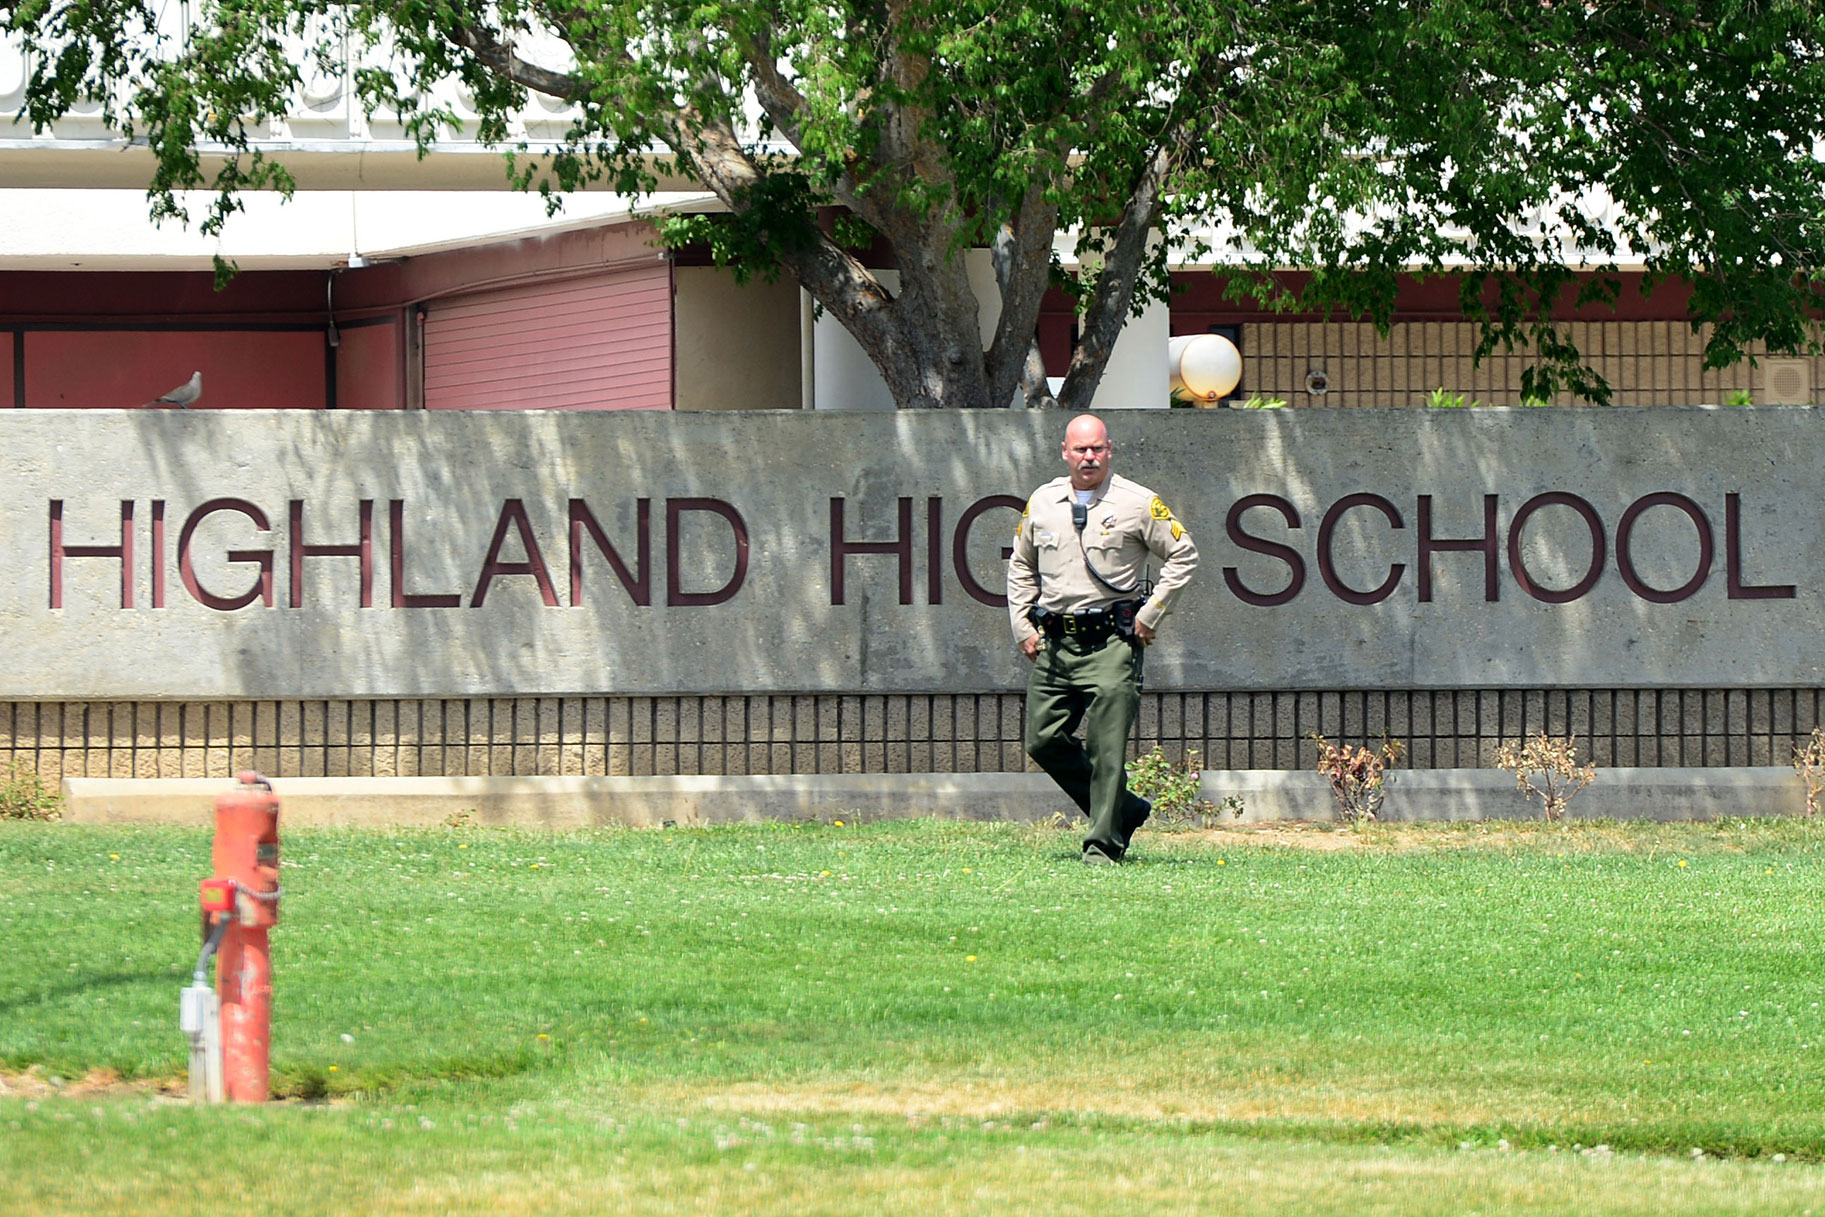 Highland High School in Palmdale